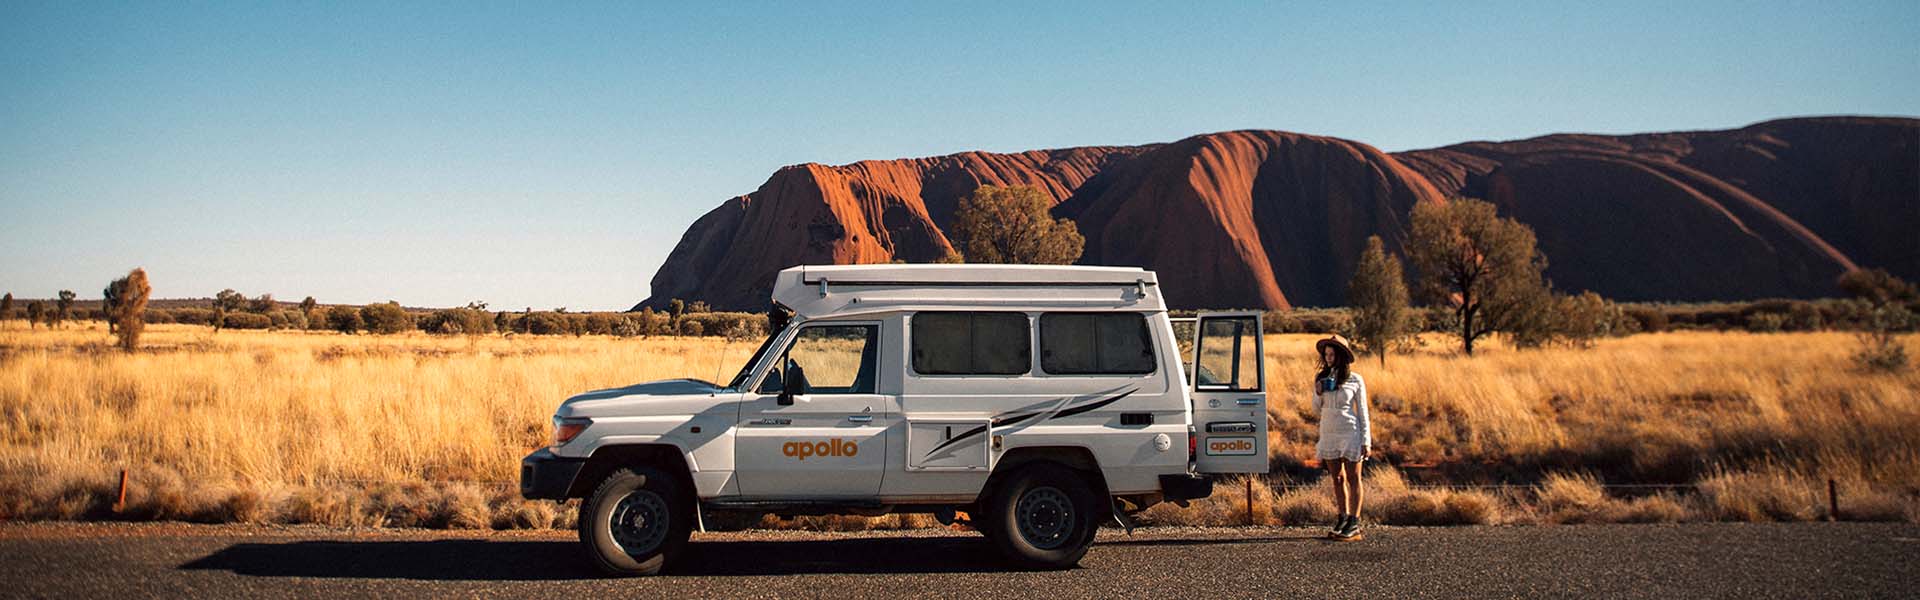 Apollo 4WD Camper at Uluru, NT